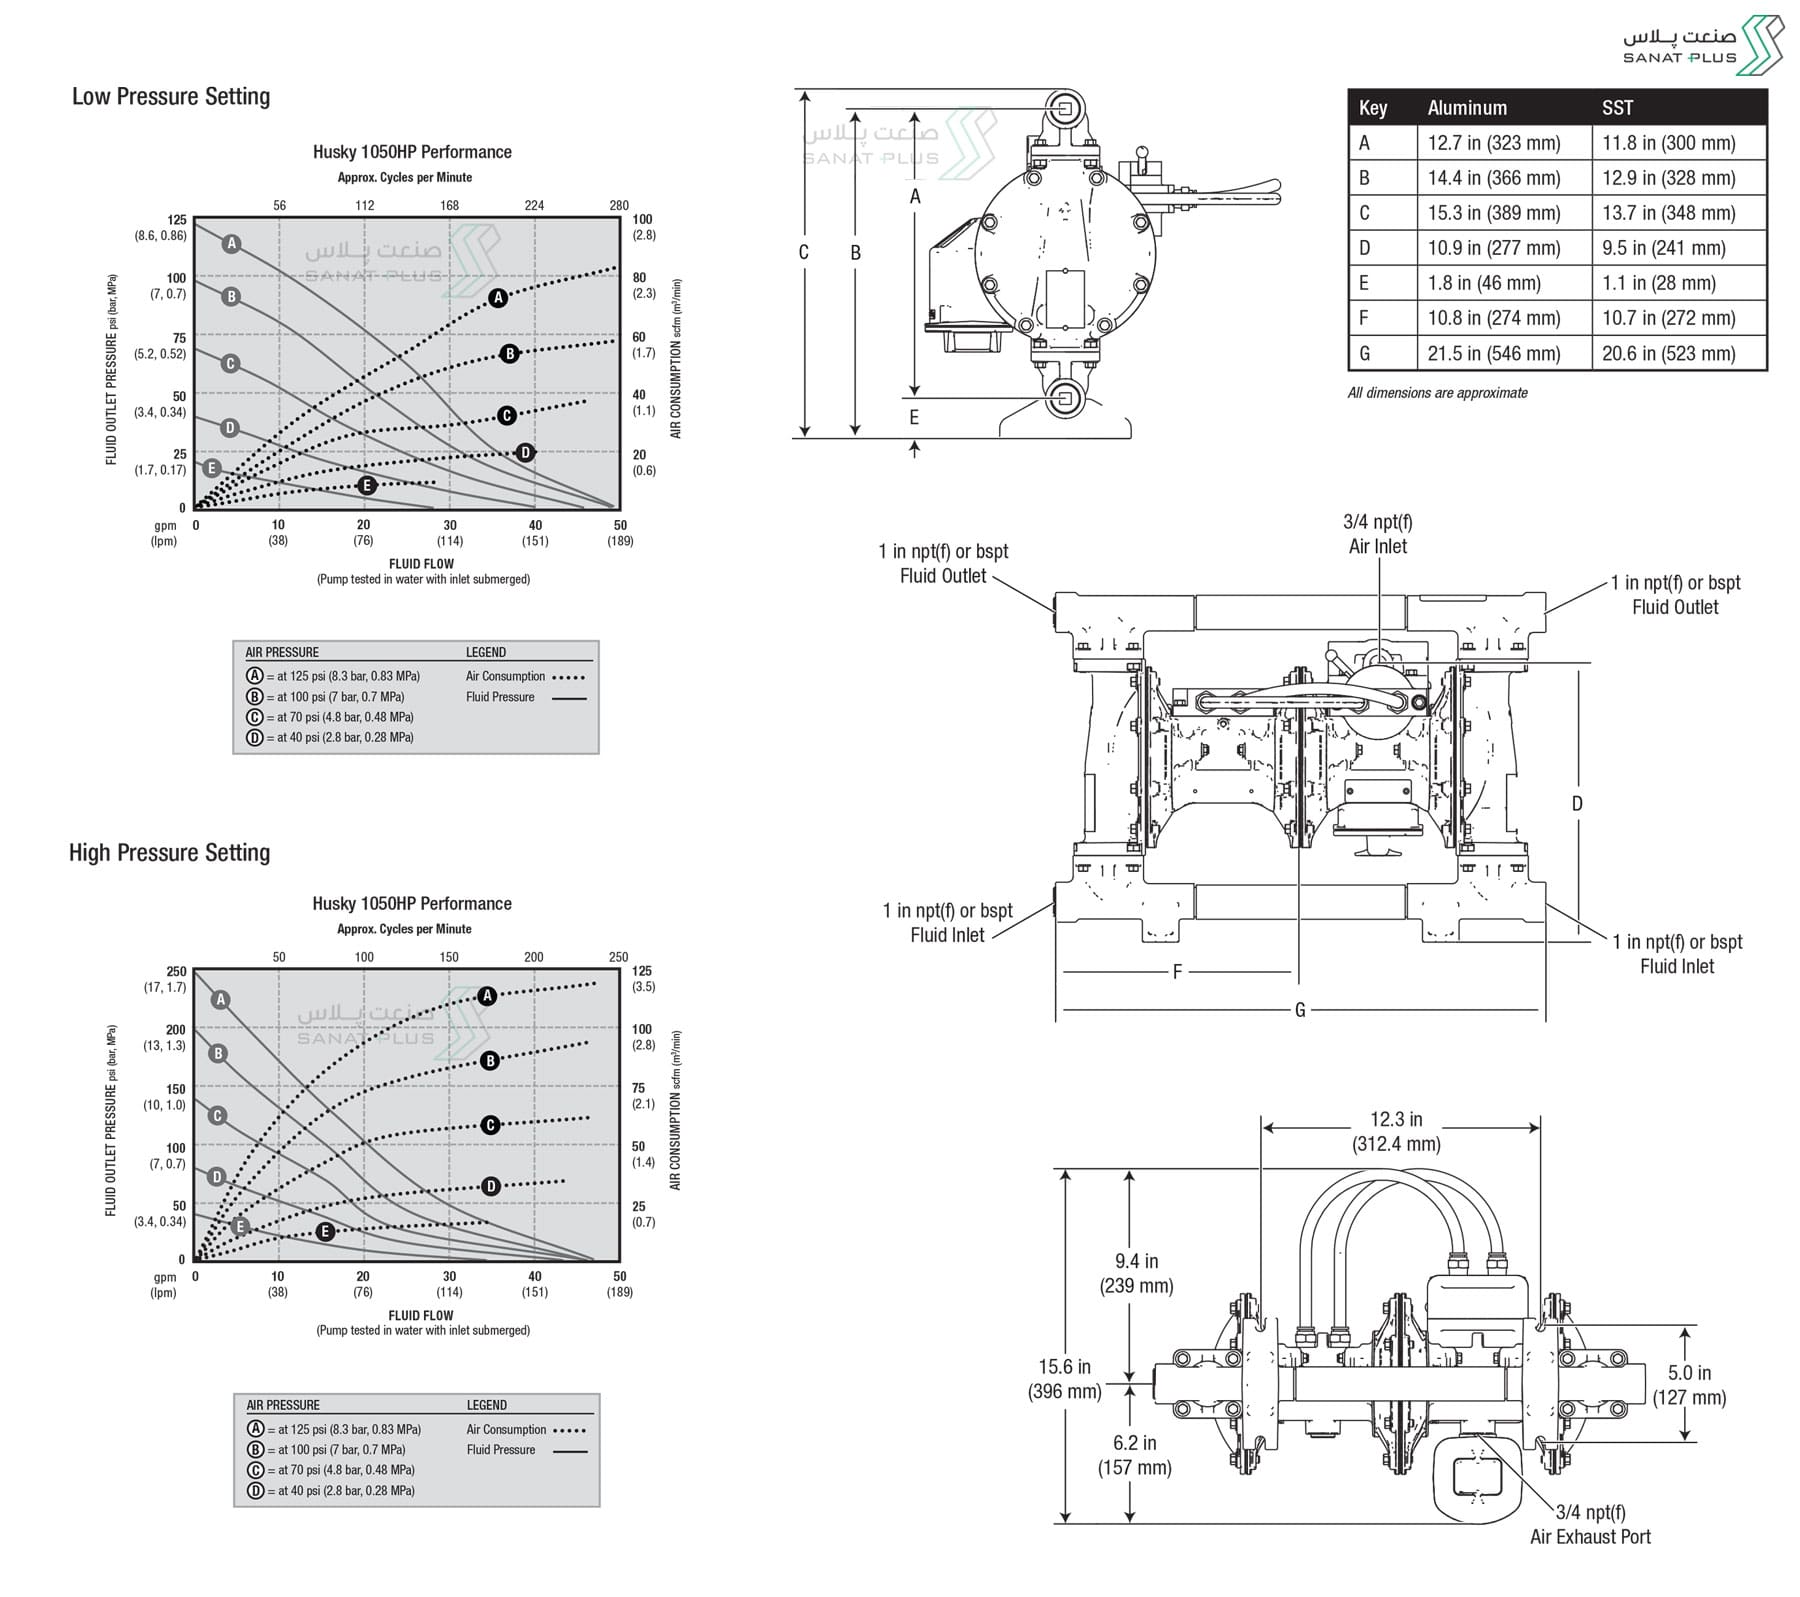 ابعاد و اندازه پمپ دیافراگمی گراکو سری Husky 1050HP | صنعت پلاس